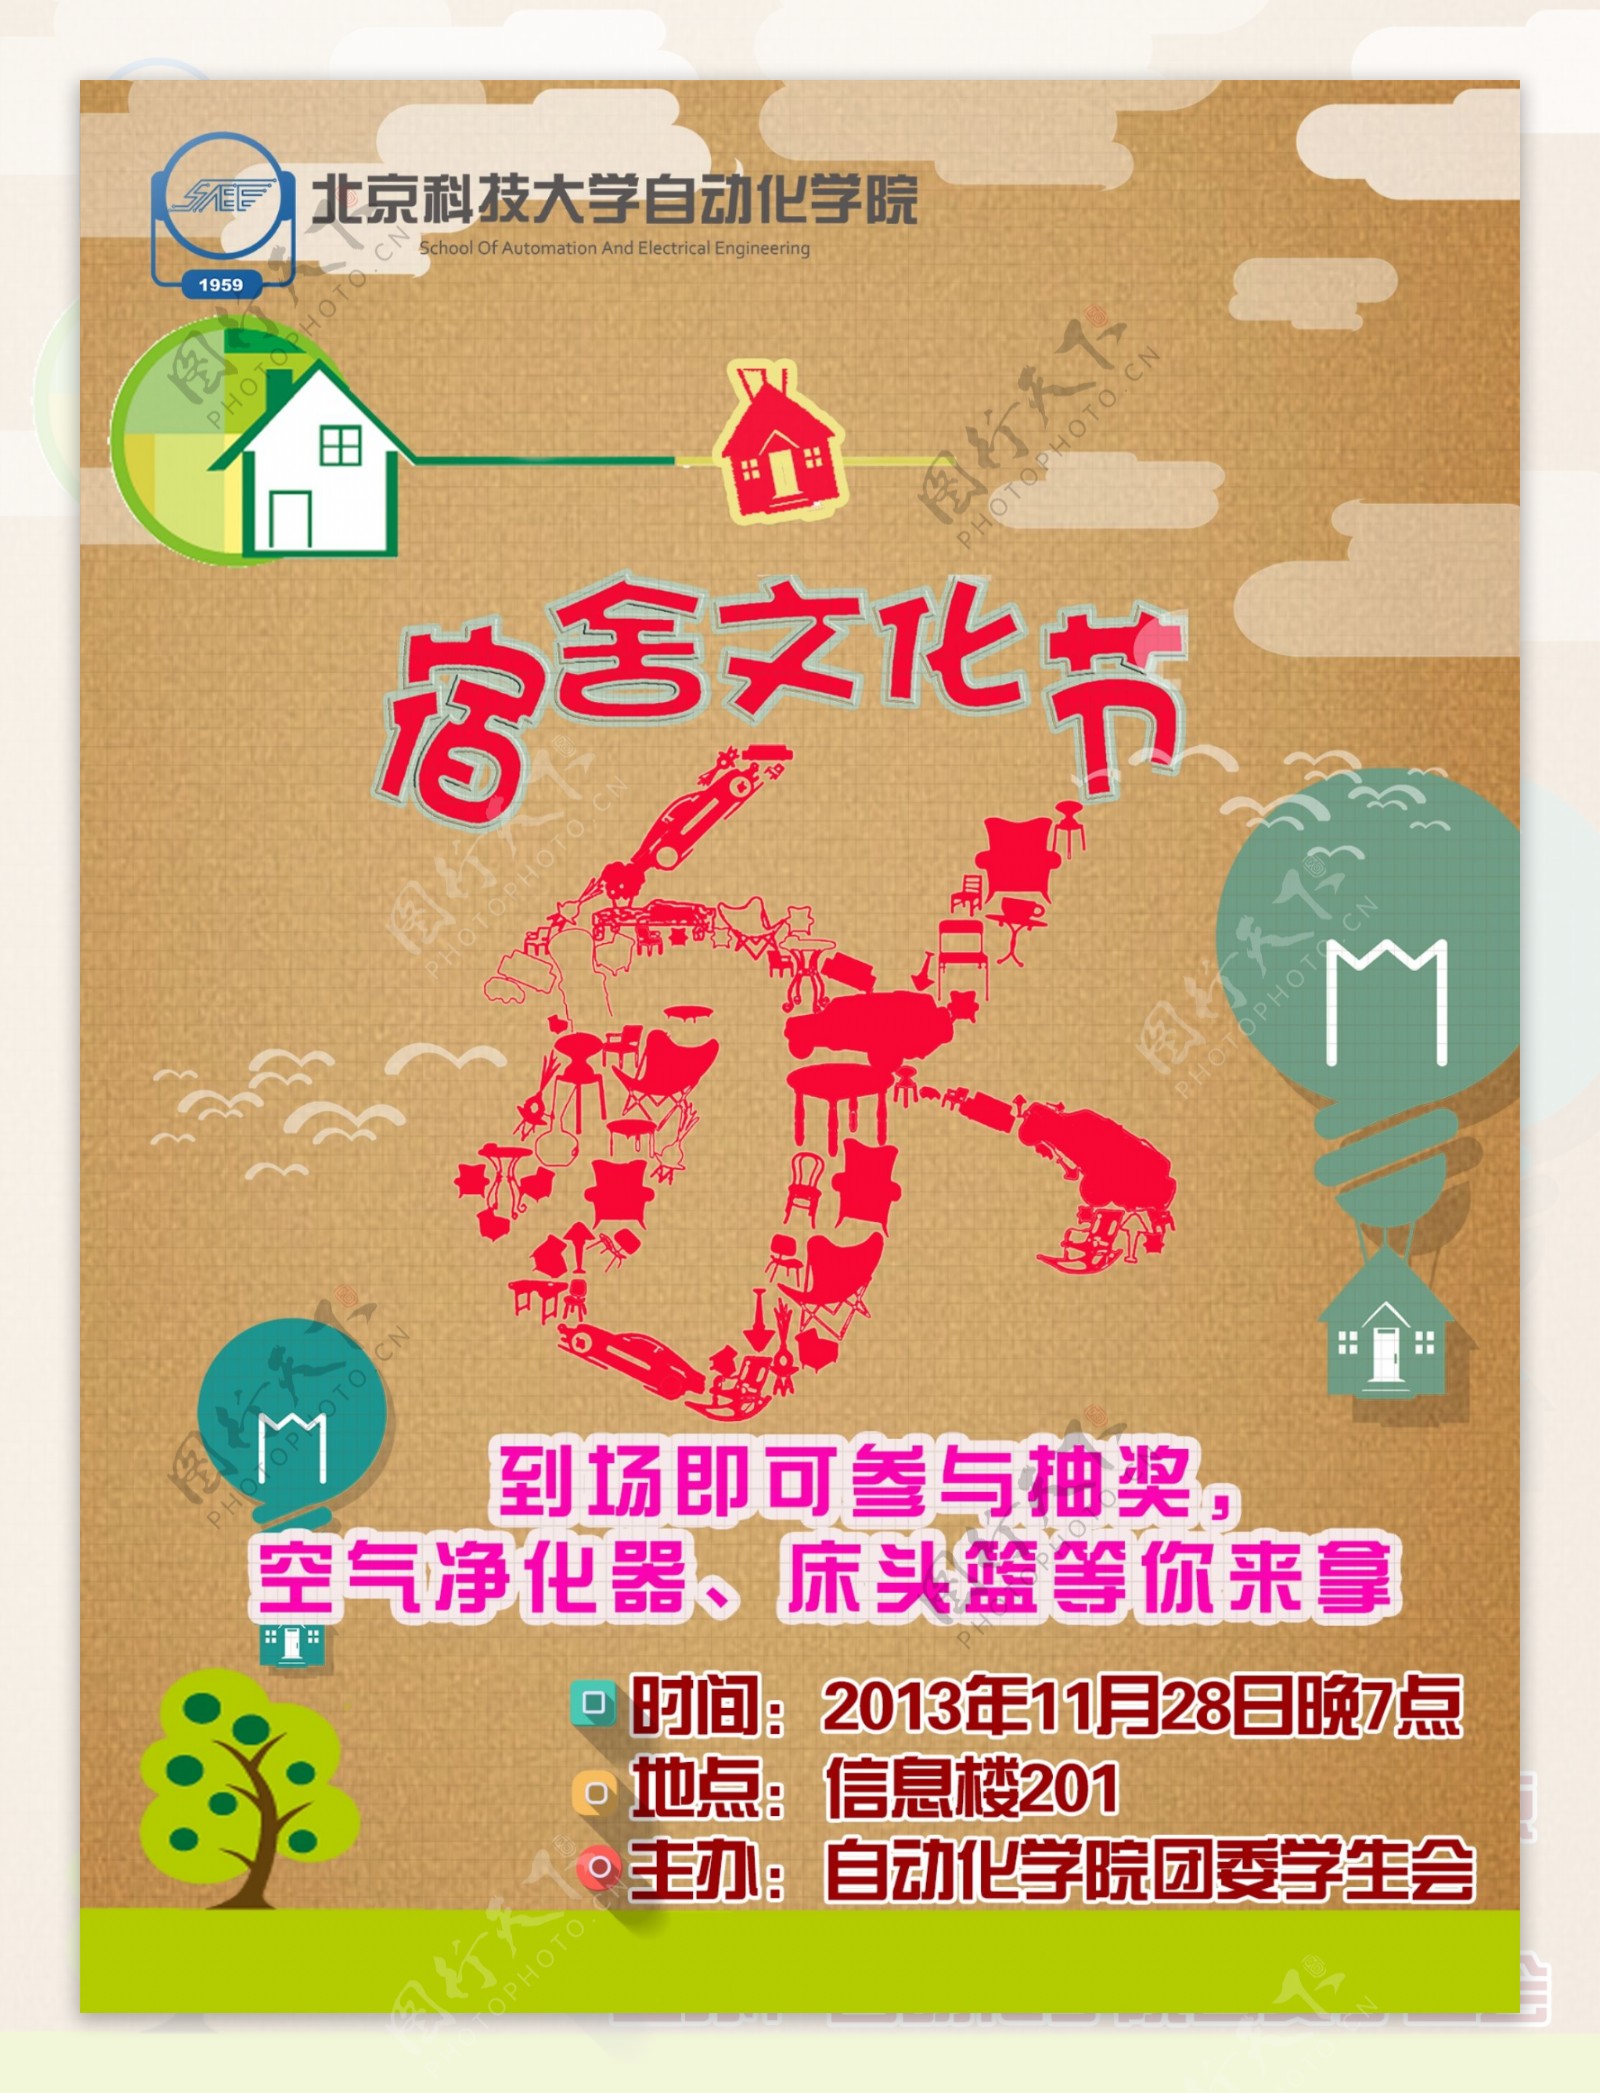 宿舍文化节宣传海报图片